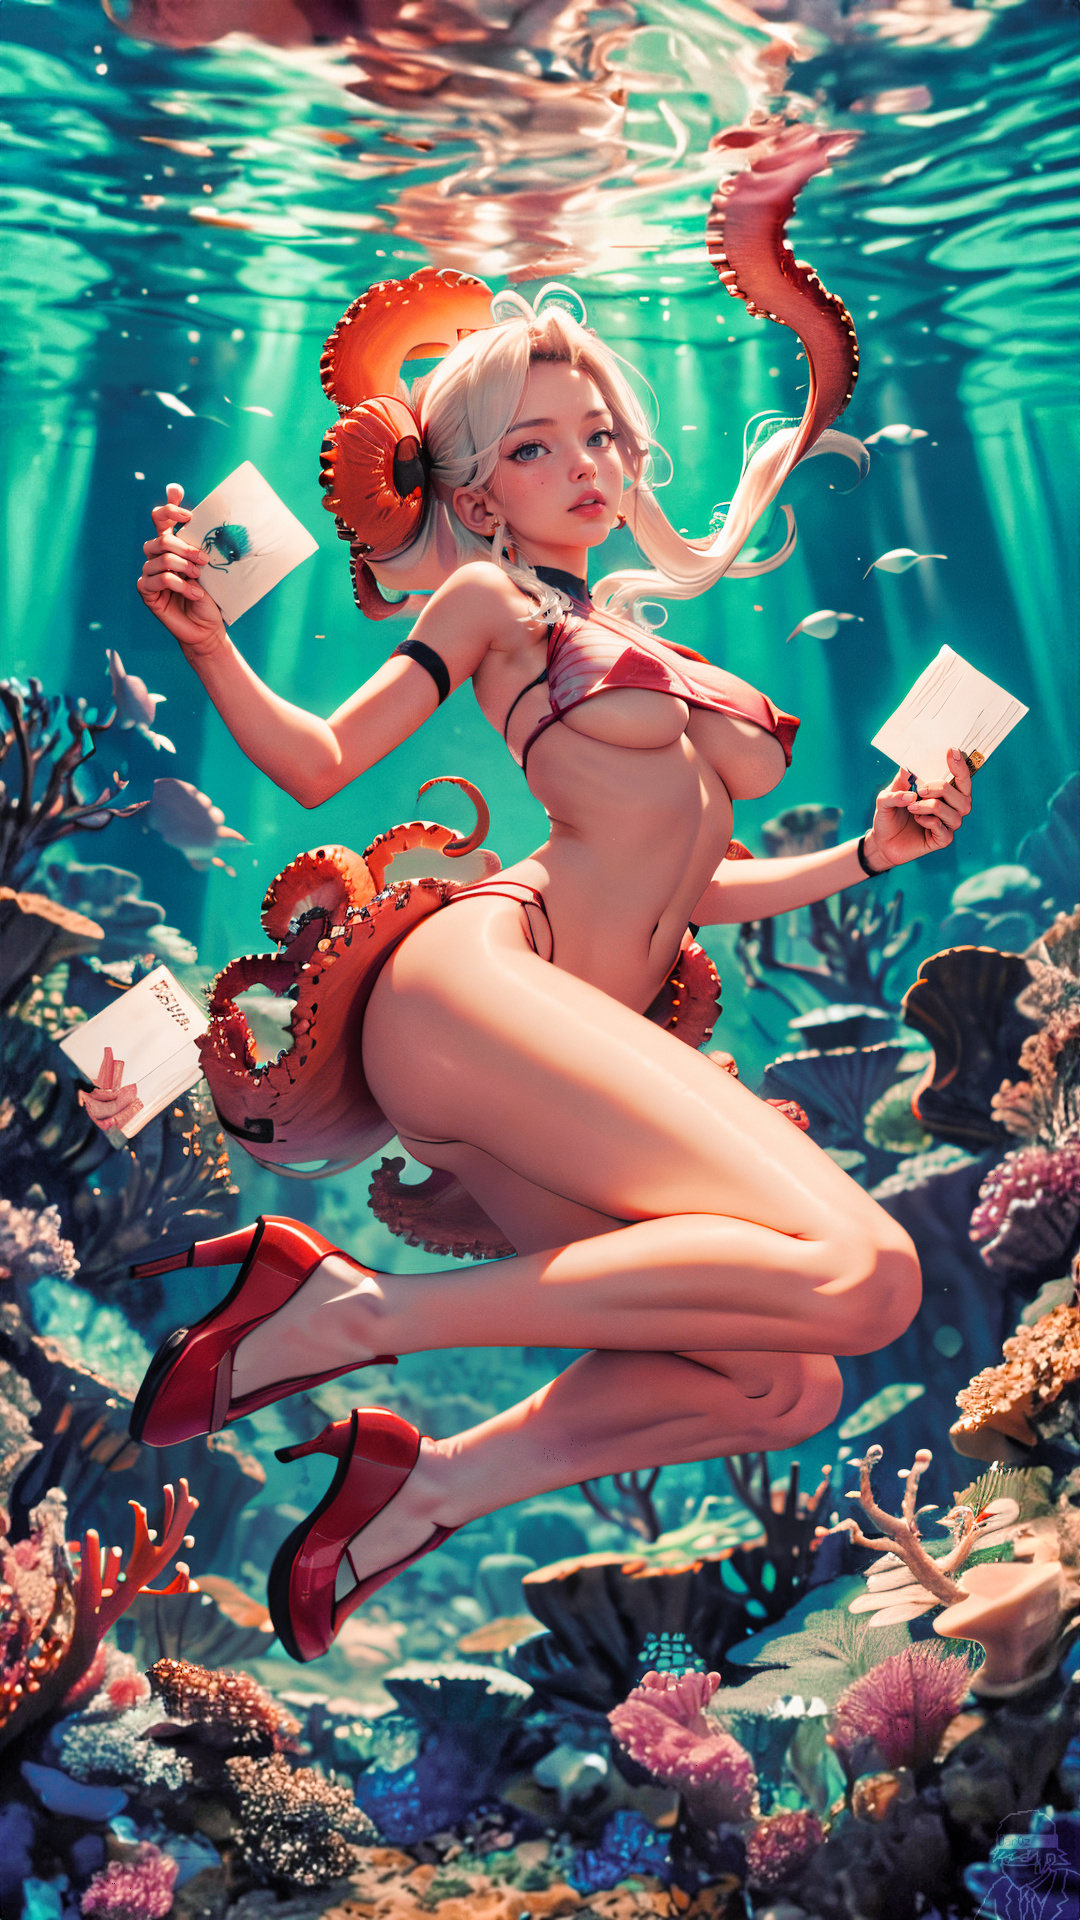 General 1080x1920 AI art digital art dar0z artwork underwater coral tentacles paper white hair floating heels swimwear portrait display water in water underboob big boobs parted lips